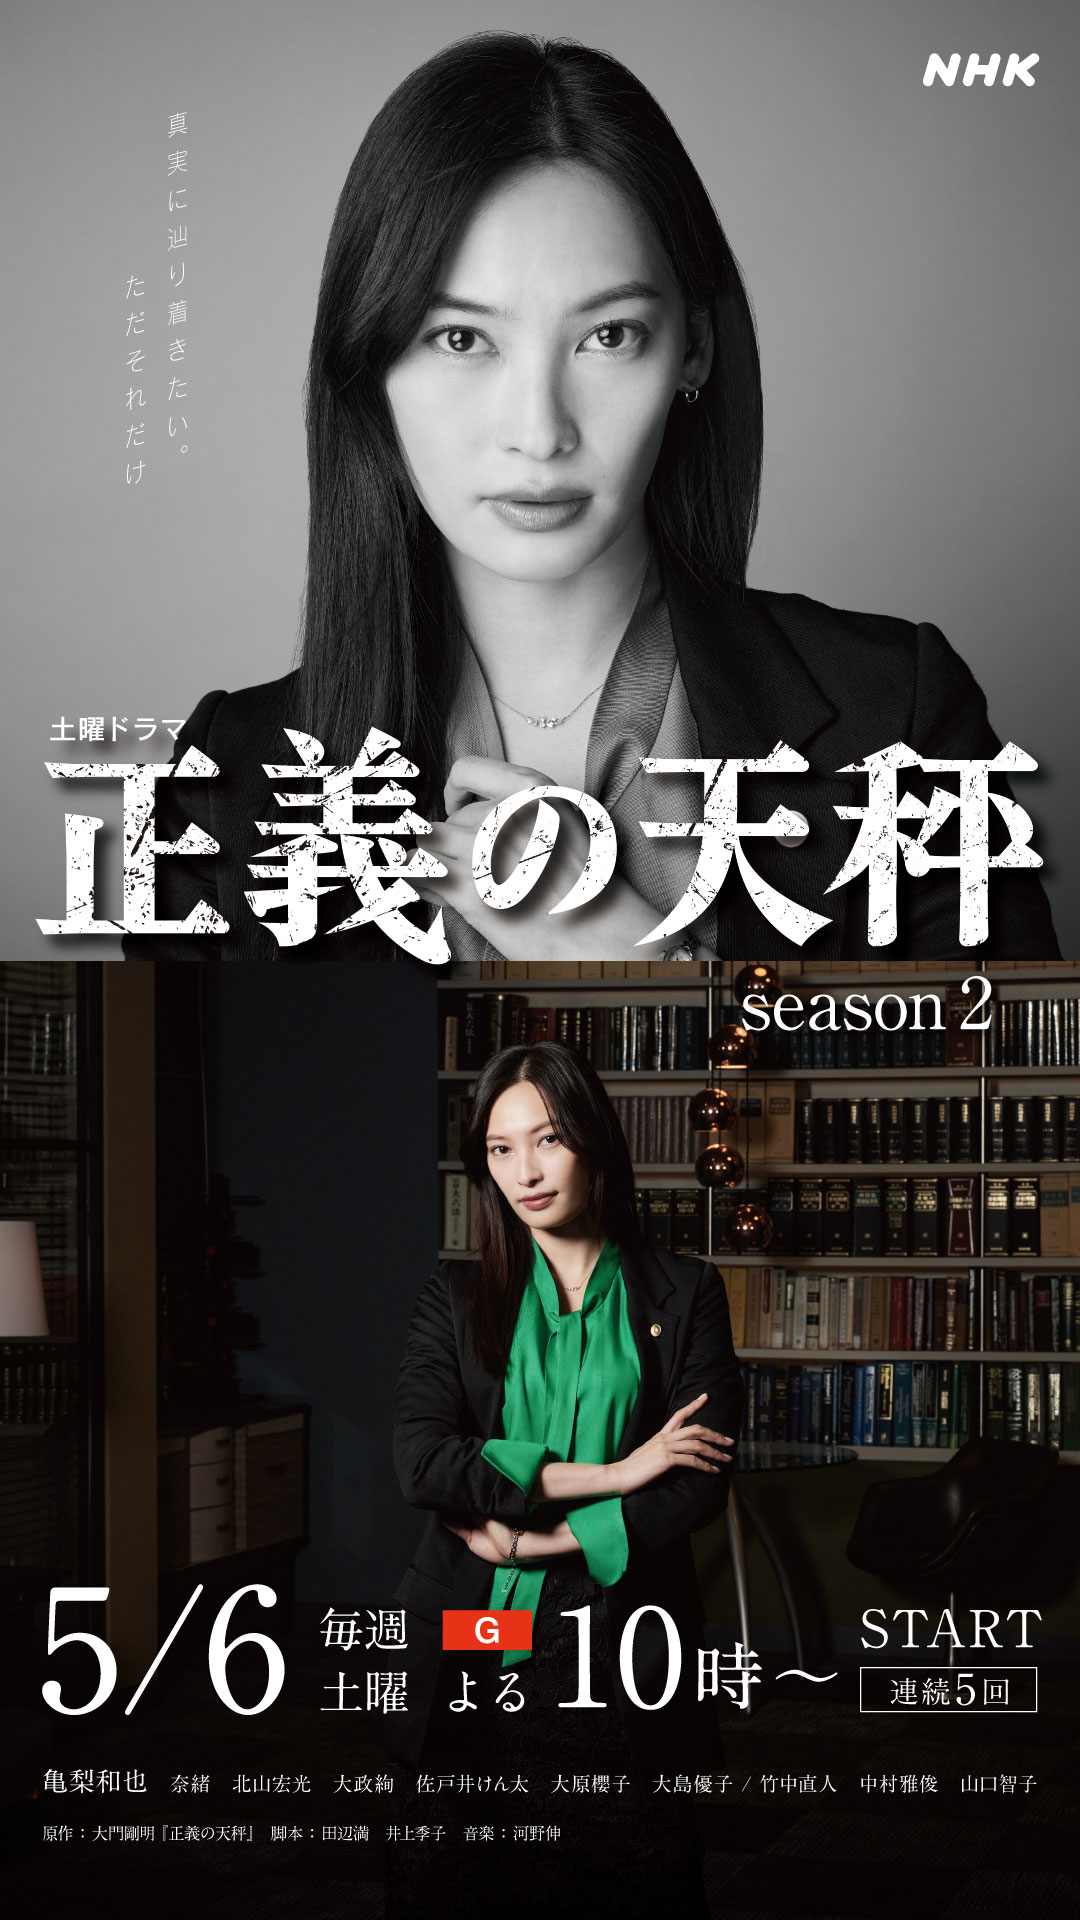 土曜ドラマ「正義の天秤 season2」ROOM1 キャラクタービジュアル新着！ - NHK